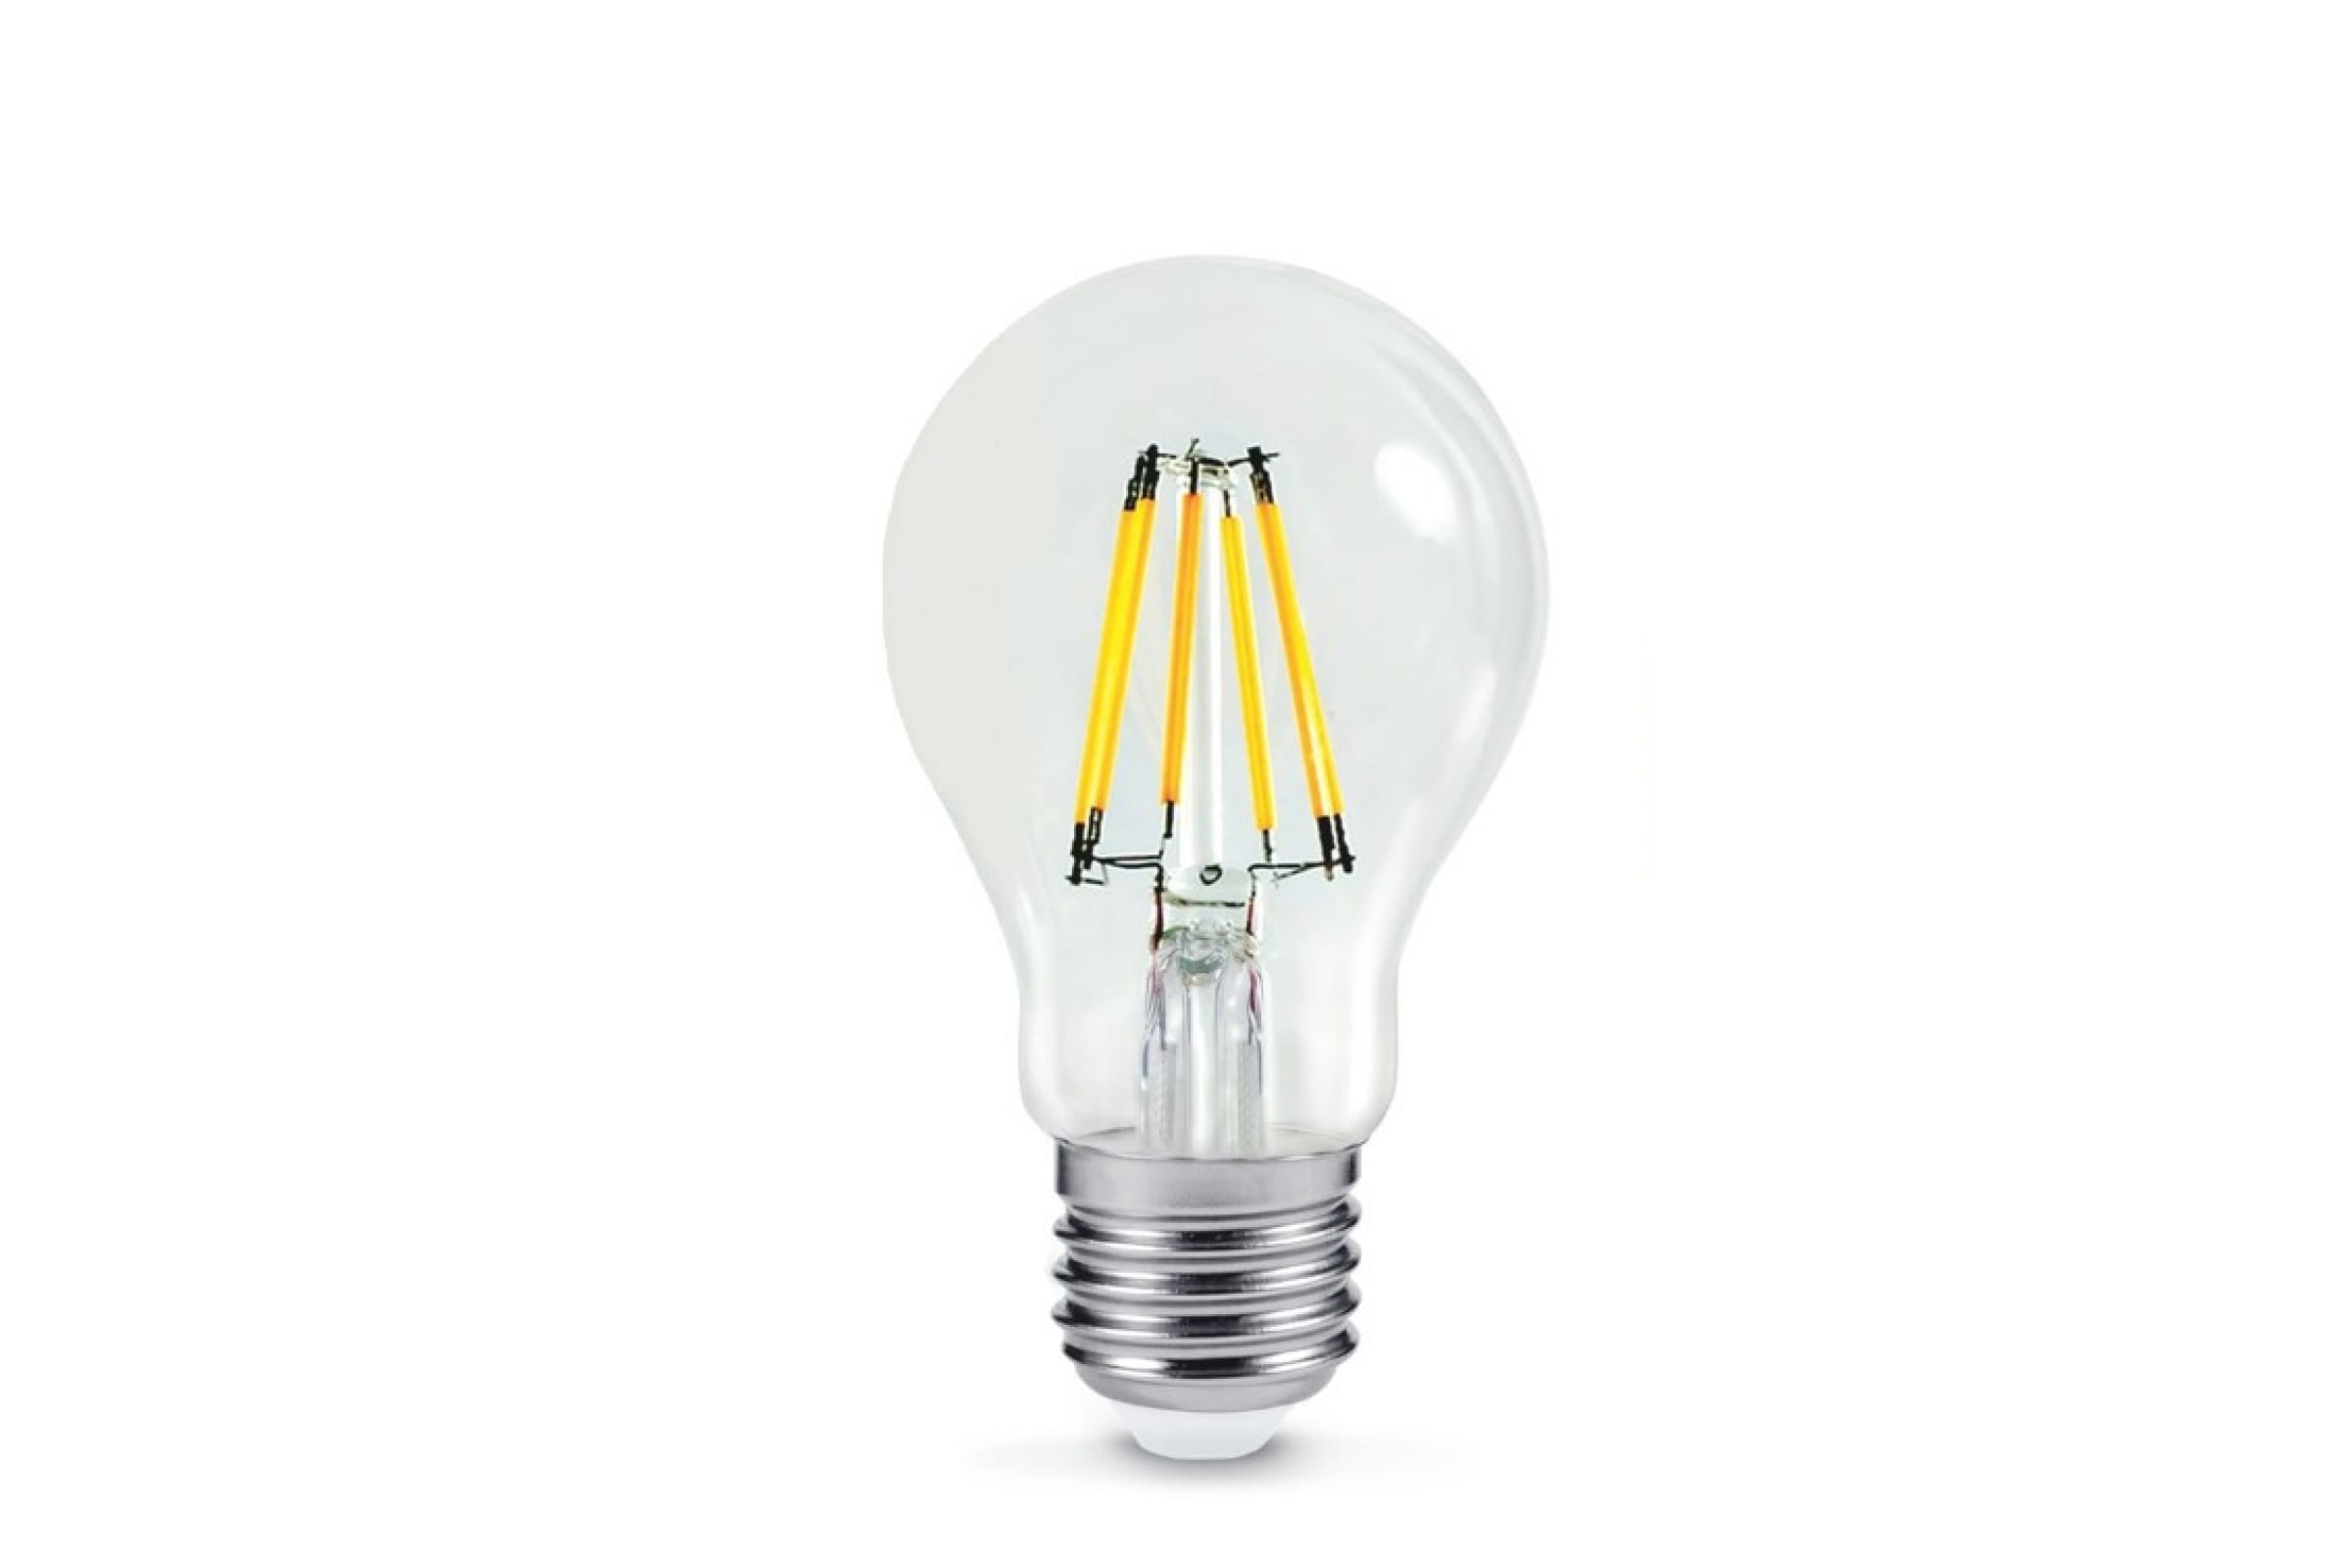 Лампа светодиодная LED-A60-deco 11Вт 230В Е27 3000К 990Лм прозрачная IN HOME